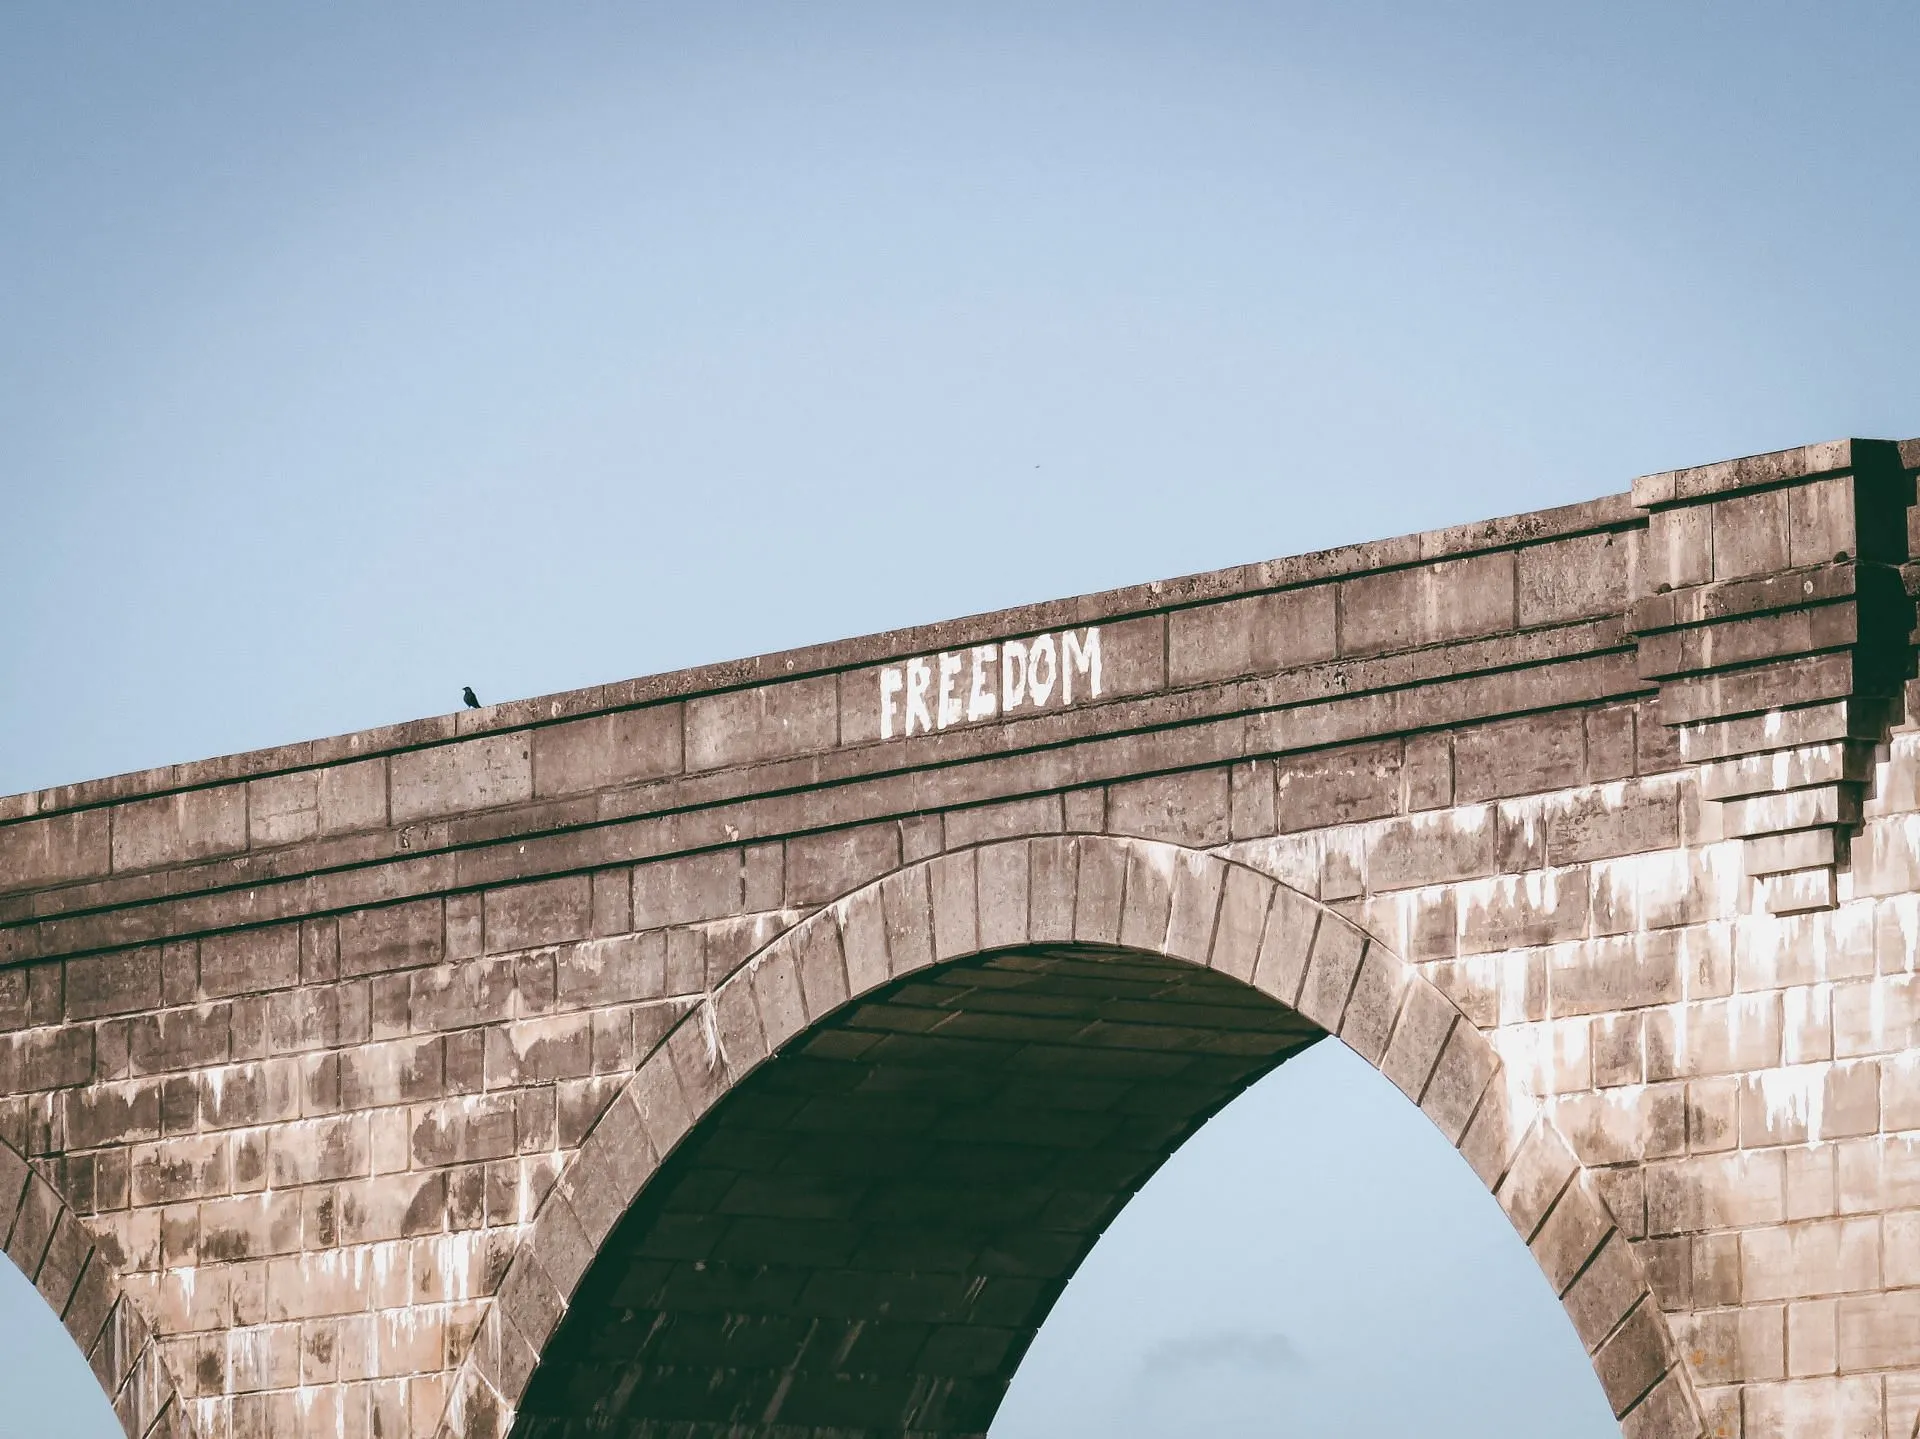 Sommige individuen kiezen ervoor om afwijkend te zijn, omdat ze een nieuw soort onafhankelijkheid en vrijheid vinden. (Afbeelding via Pexels/JD-fotografie)